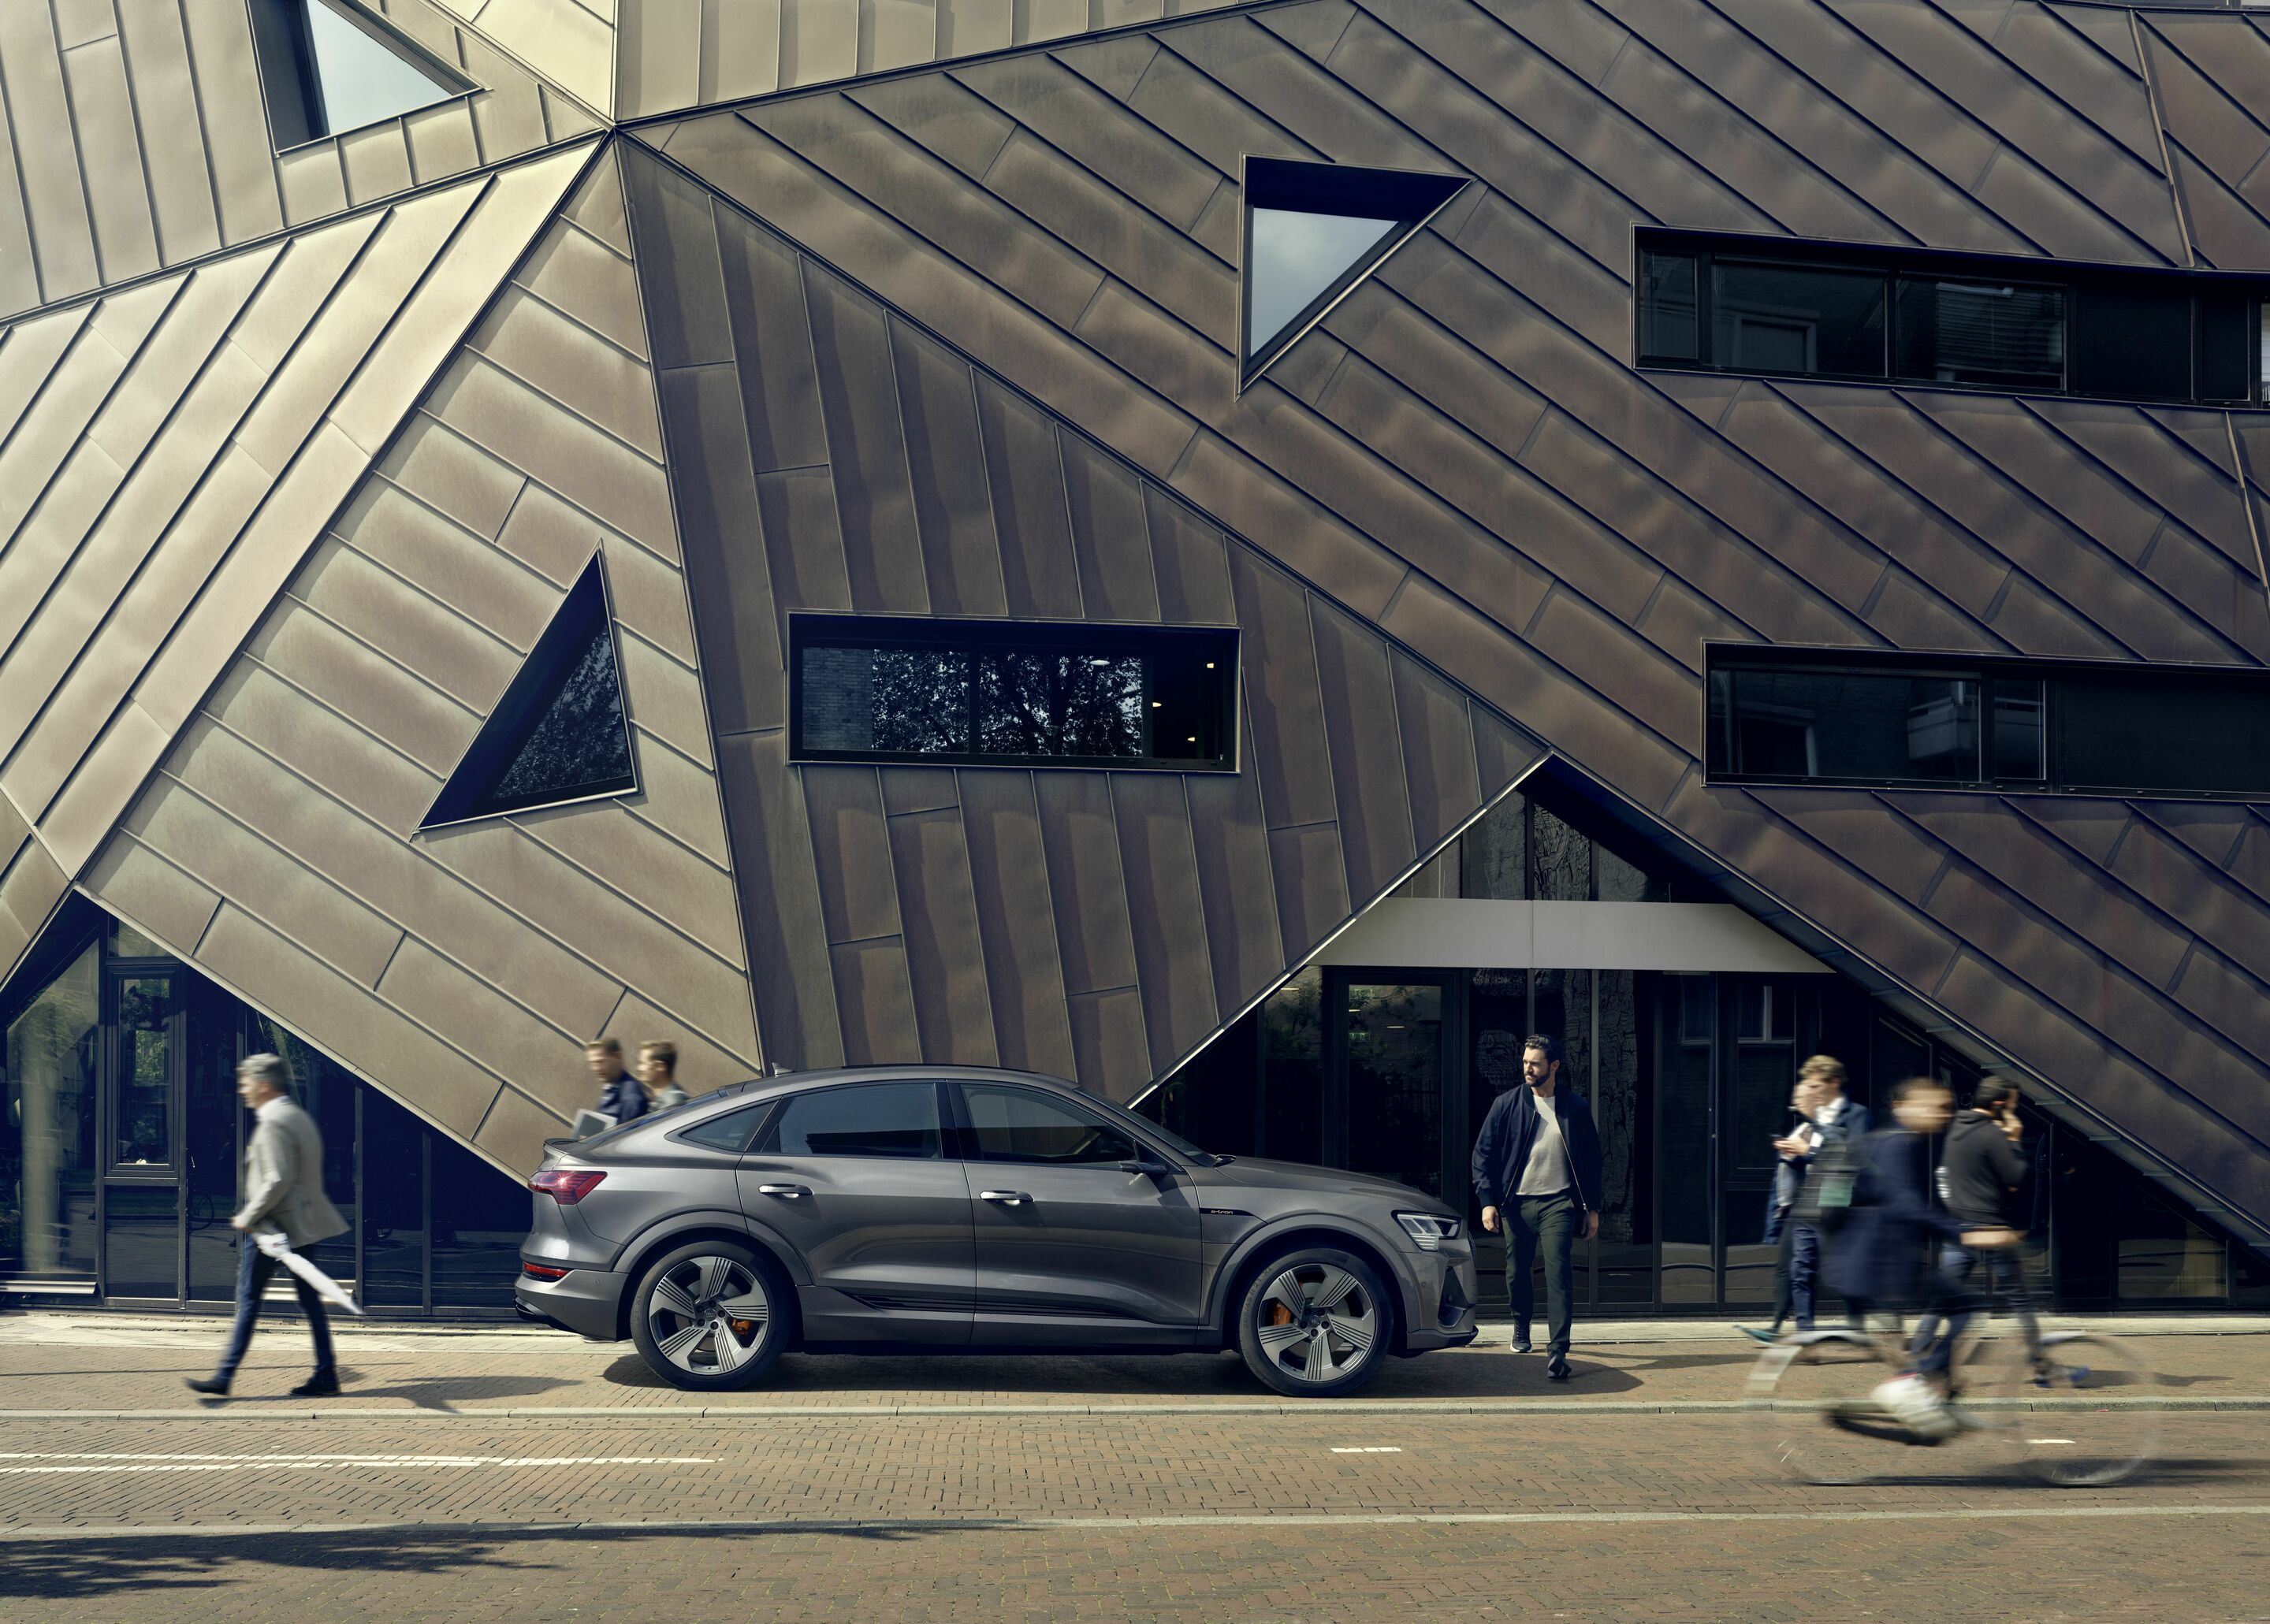 „SocAIty“-Studie 2021: Audi adressiert gesellschaftliche Dimension des autonomen Fahrens